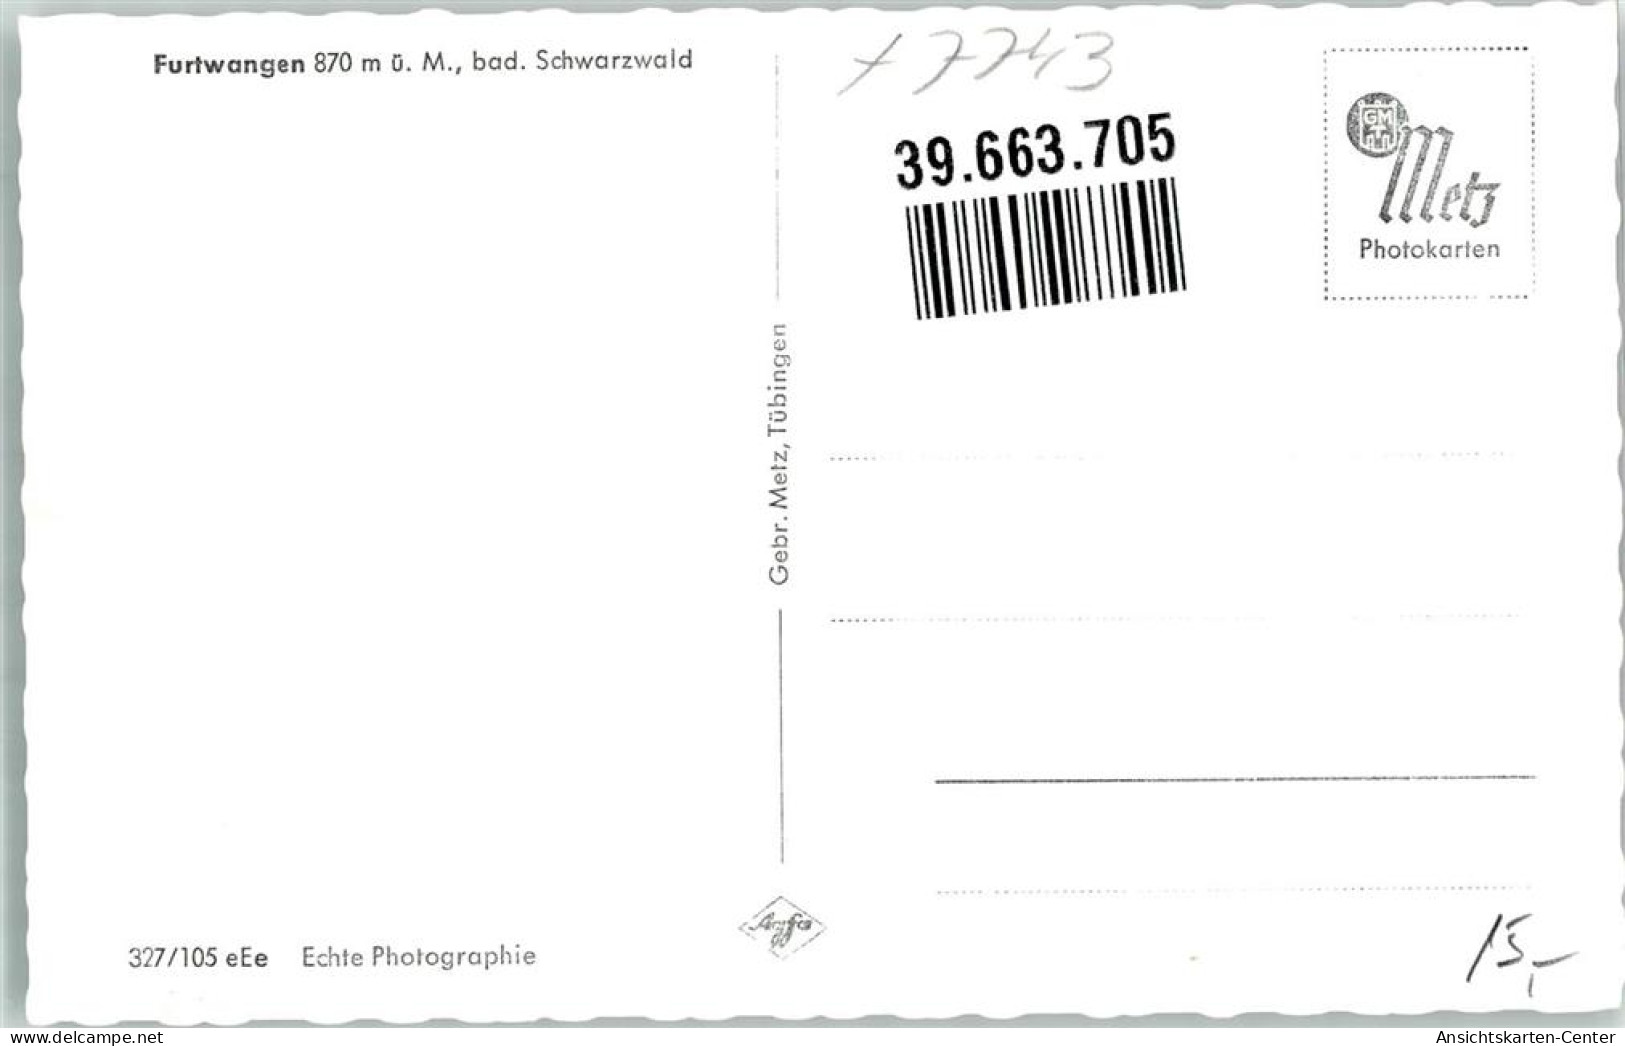 39663705 - Furtwangen Im Schwarzwald - Furtwangen